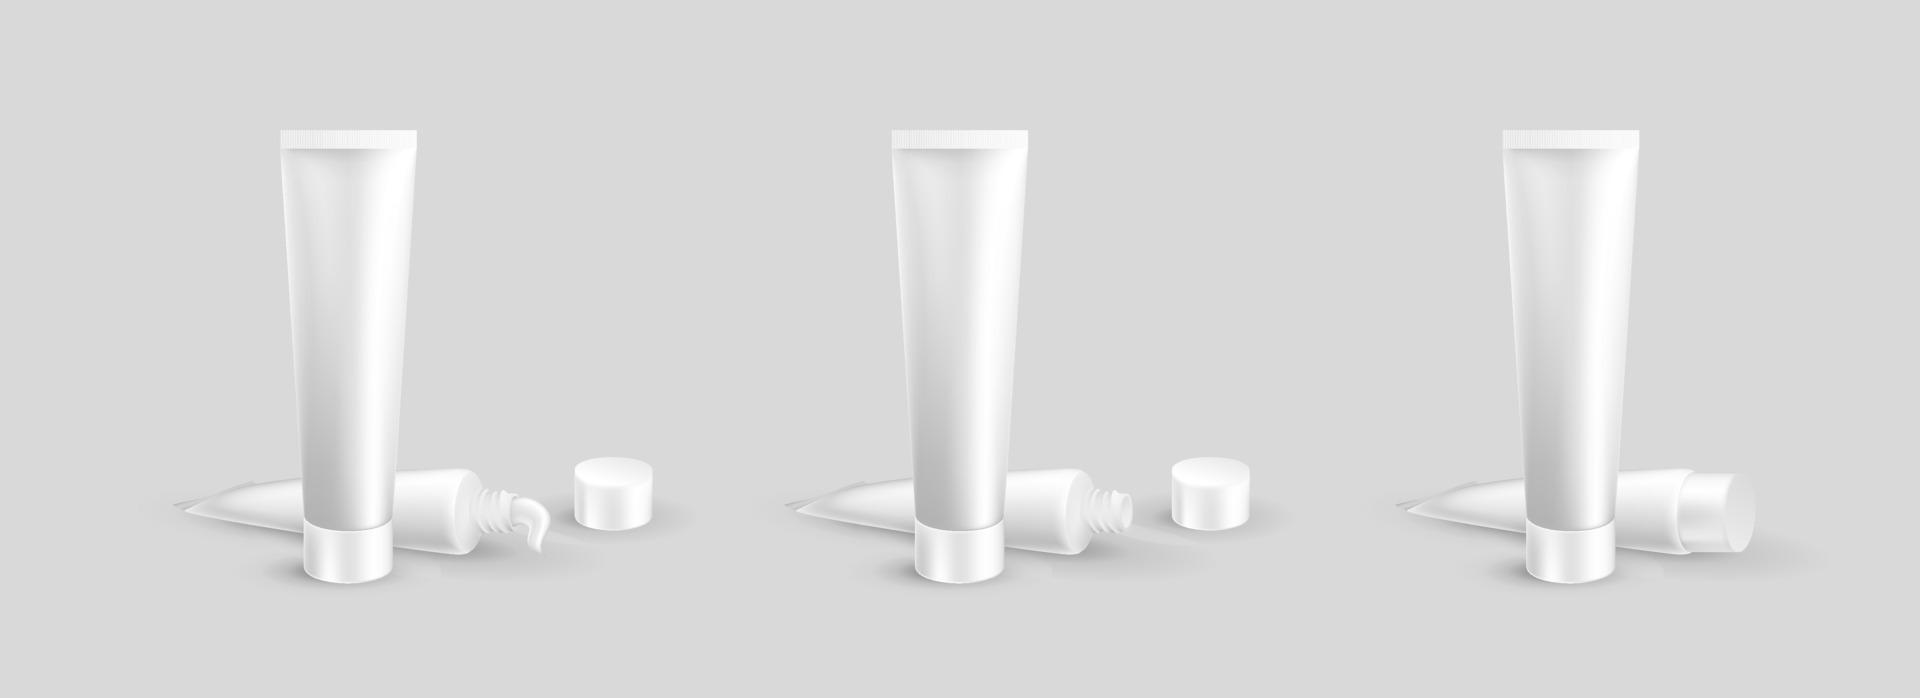 ensemble de tube de crème réaliste. modèle de maquette d'emballage pour produits cosmétiques et médicaux. illustration vectorielle vecteur